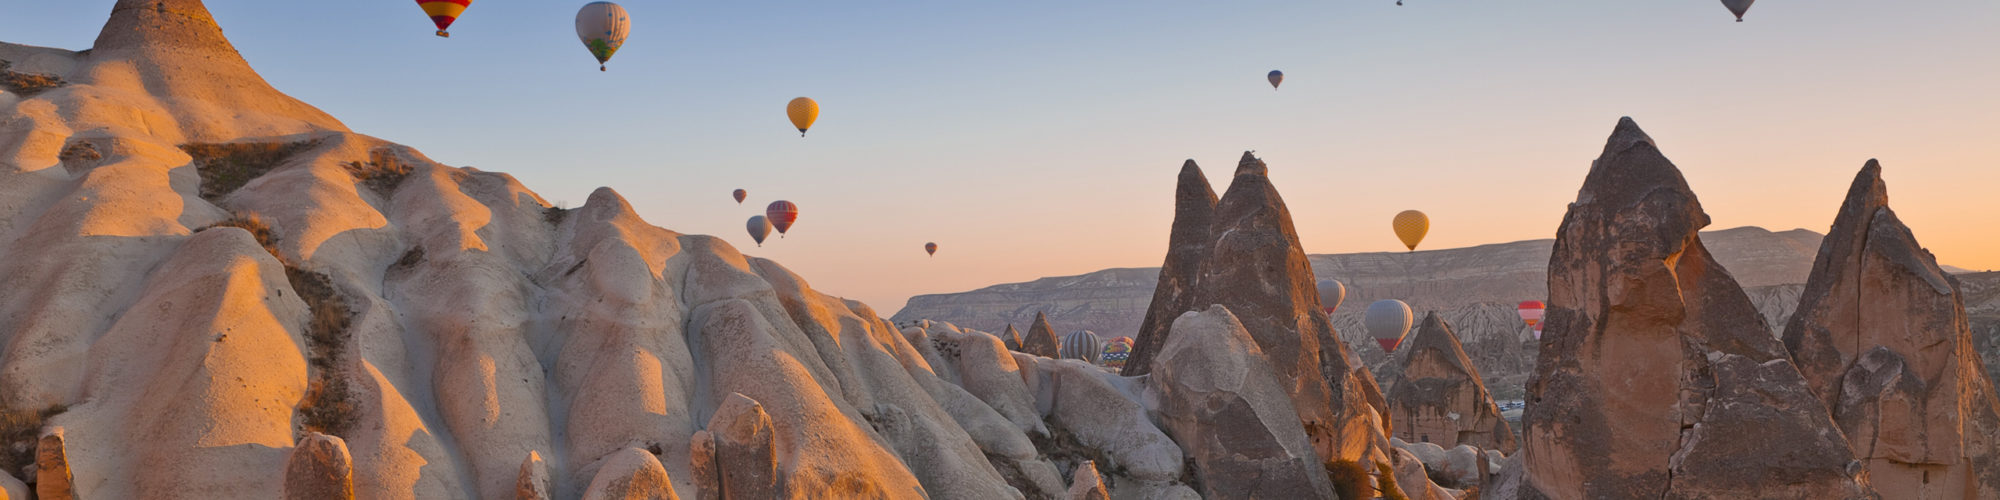 Cappadocia travel agents packages deals